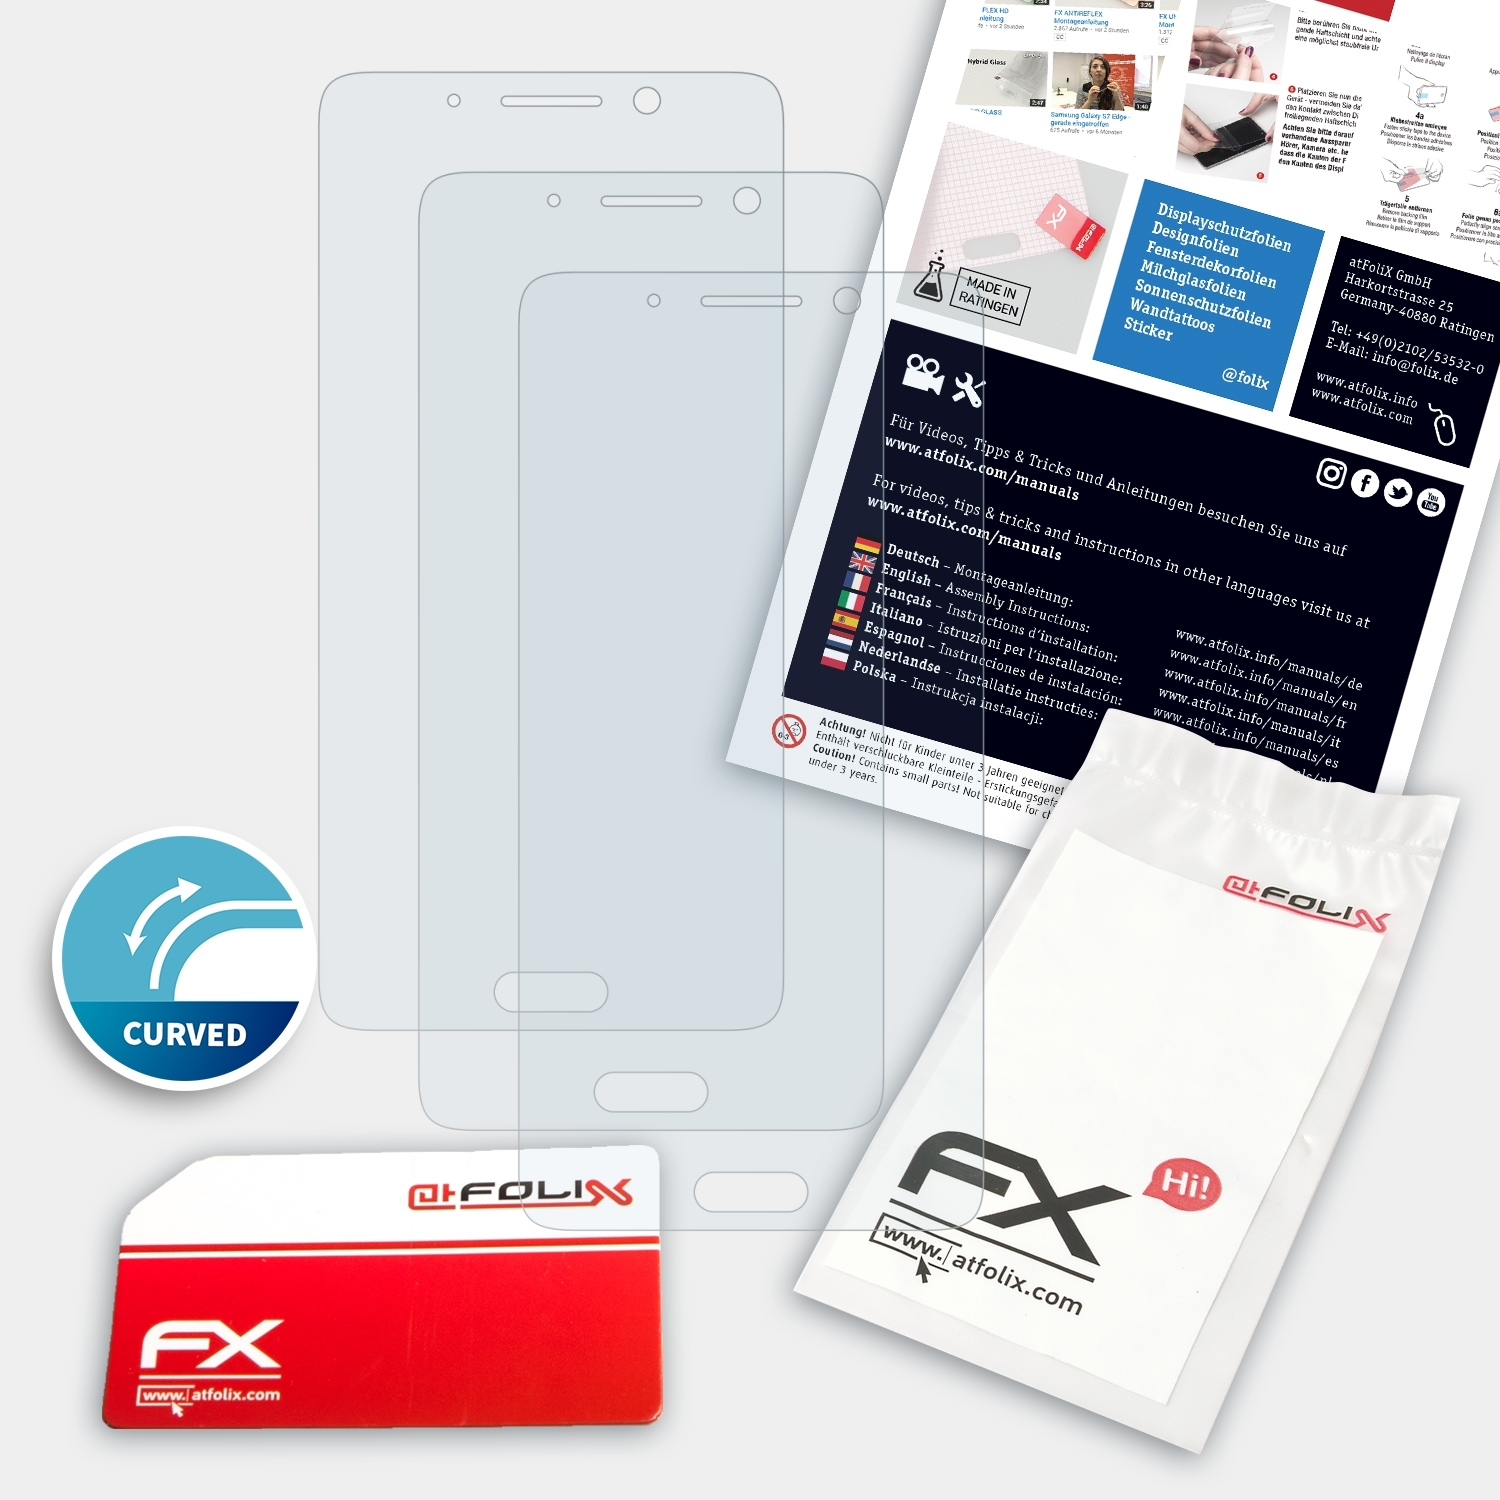 Mate ATFOLIX Huawei 3x FX-ActiFleX Pro) Displayschutz(für 9